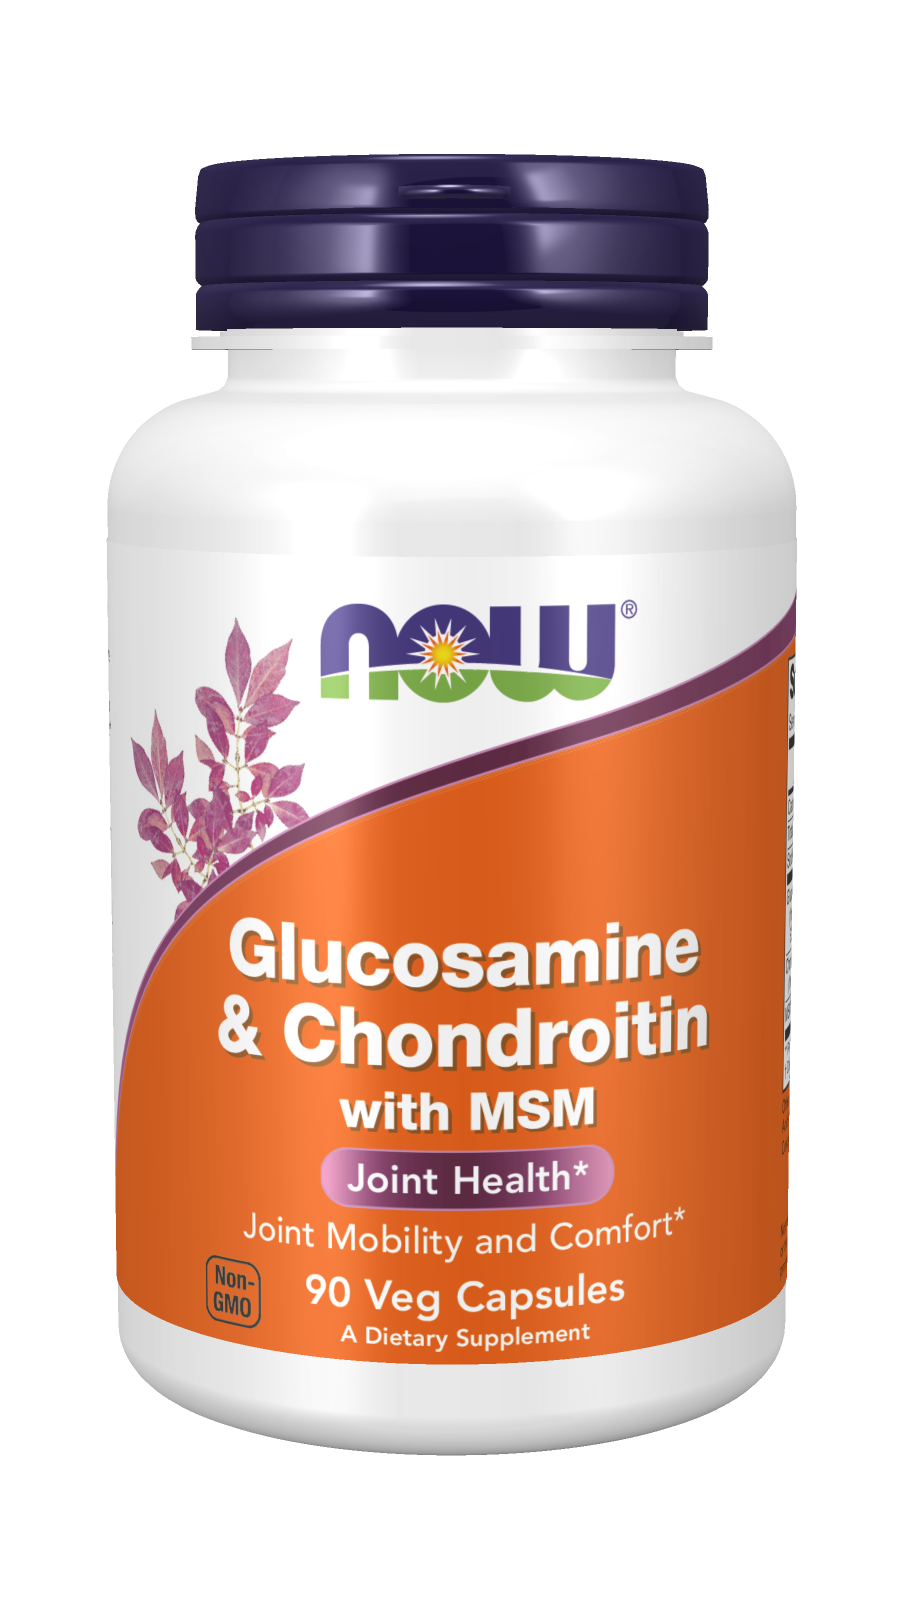 Glucosamine & Chondroitin with MSM Veg Capsules